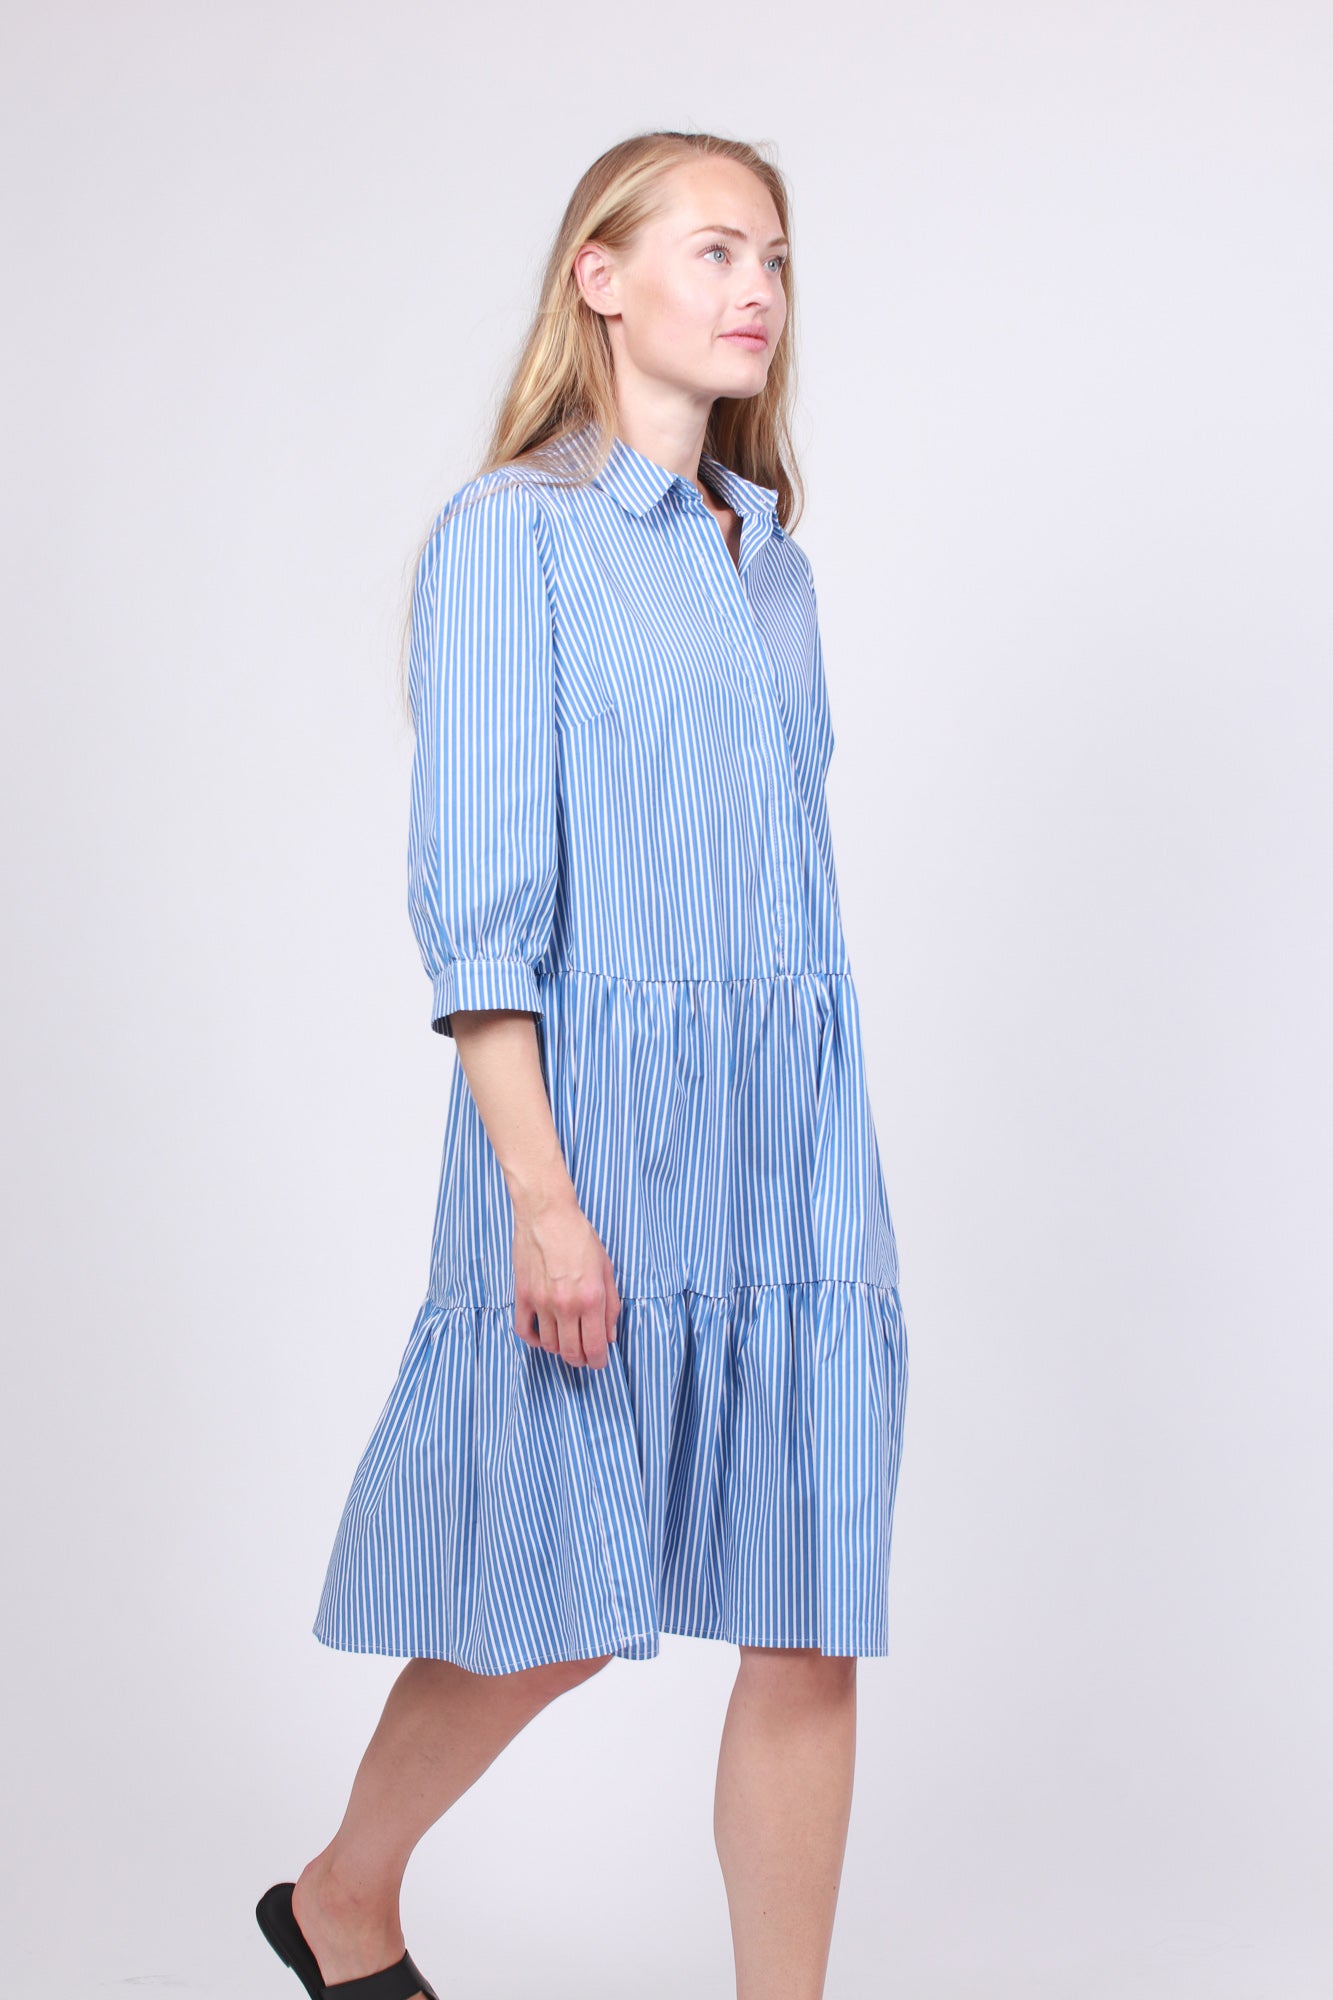 Ching Ava 3/4 Dress - Mid Blue Stripe - Moss Copenhagen - Kjoler - VILLOID.no